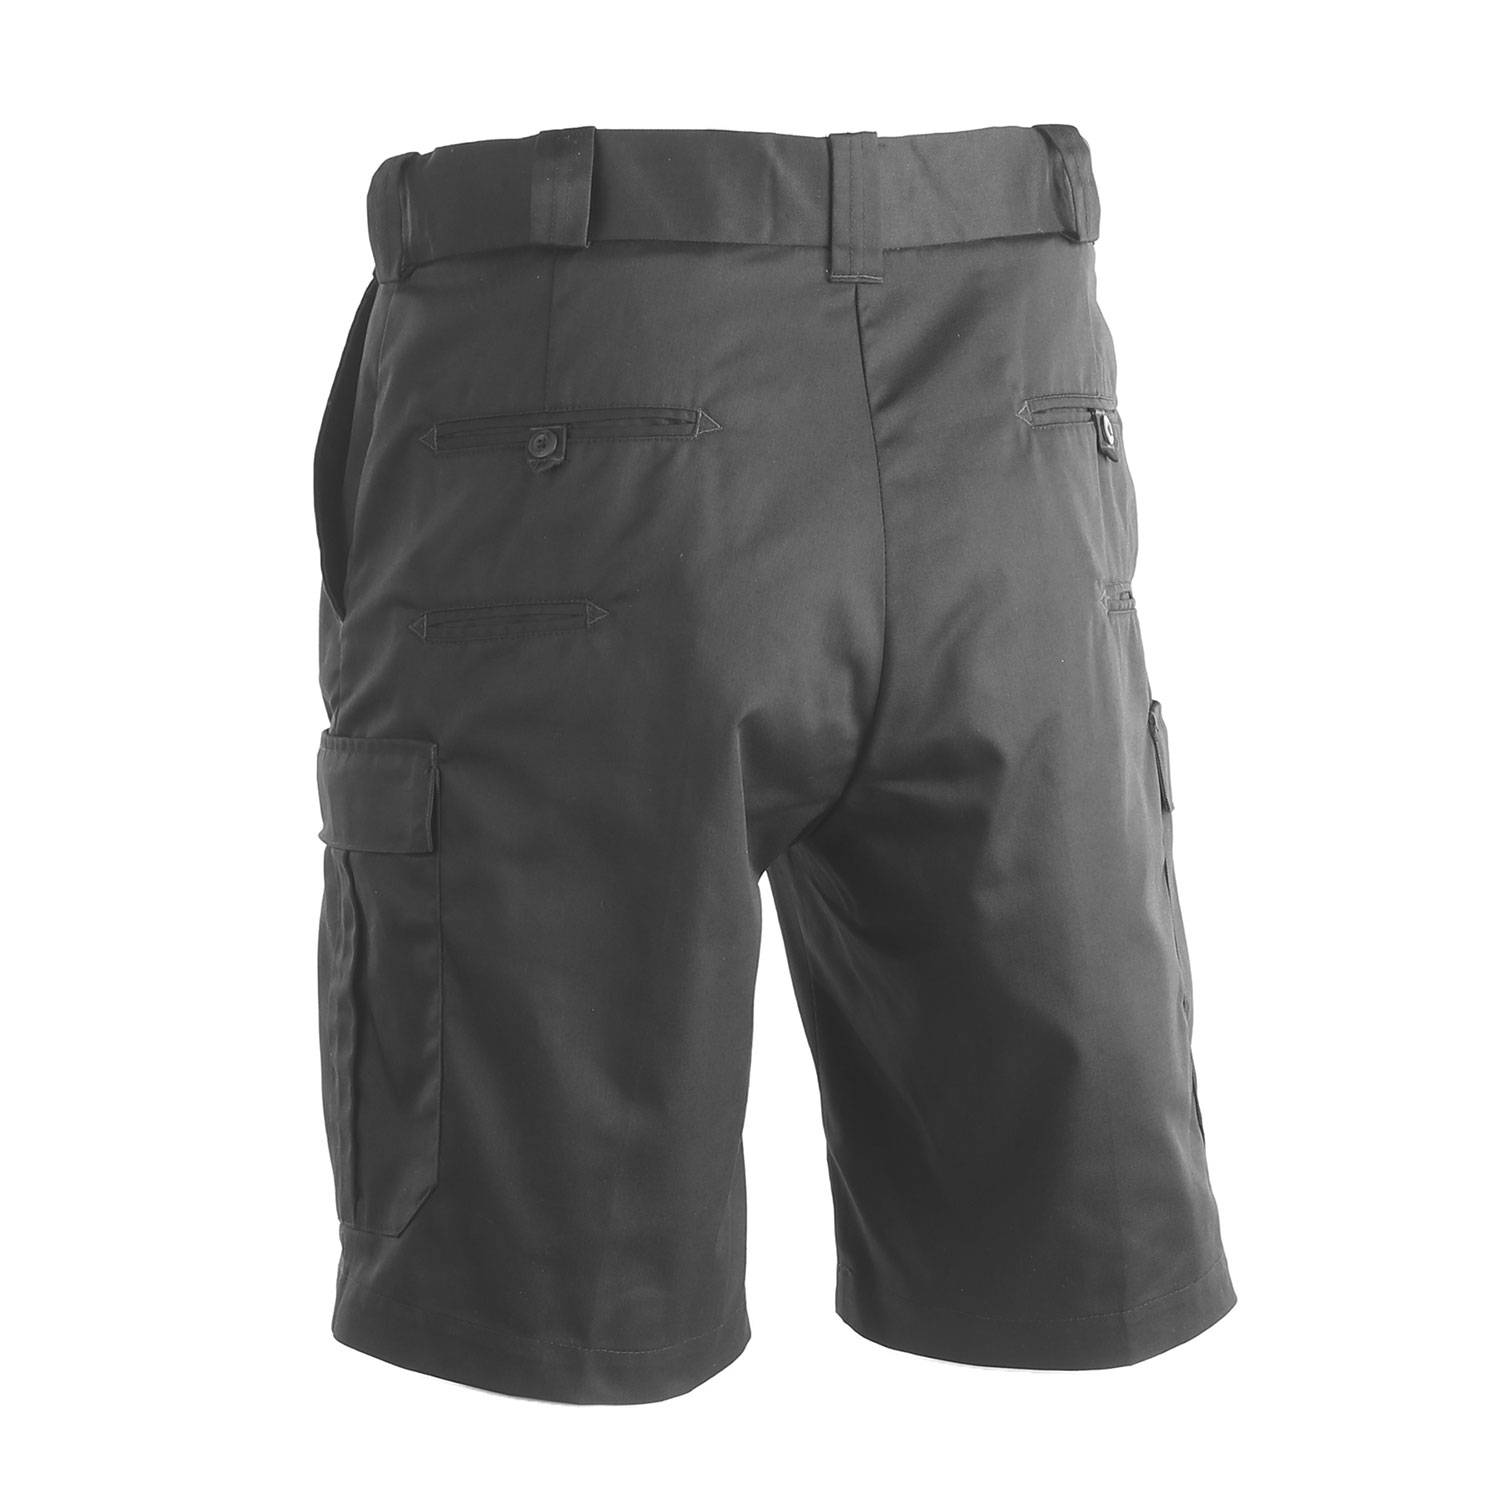 Galls G-Force Men's Tactical Shorts